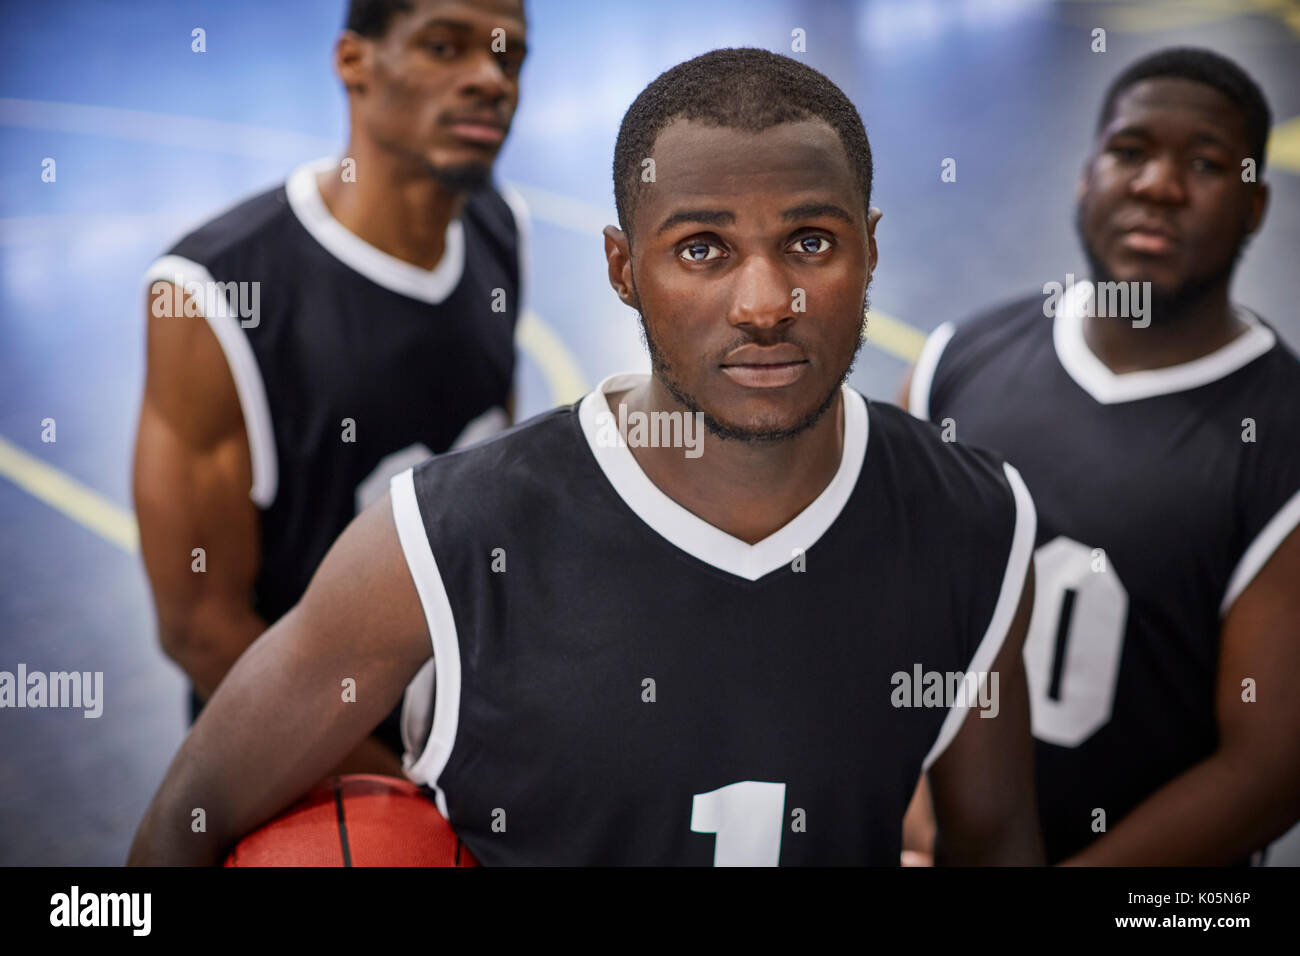 Portrait ernst, konzentriert junge männliche Basketball player Team in schwarzen Trikots Stockfoto